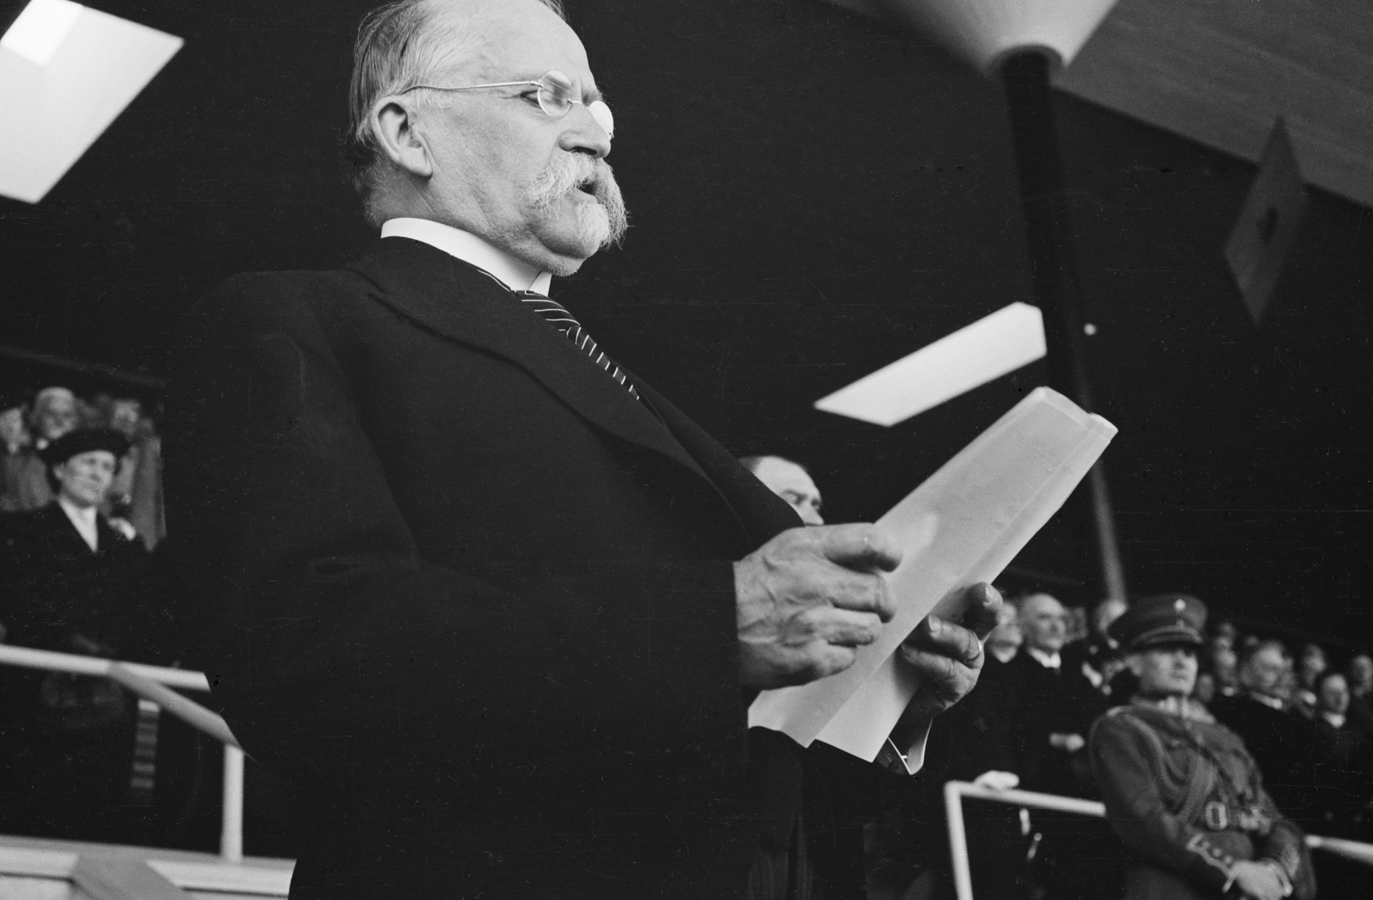 12 июня 1938 года. Президент республики Кюёсти Каллио выступает на церемонии открытия стадиона